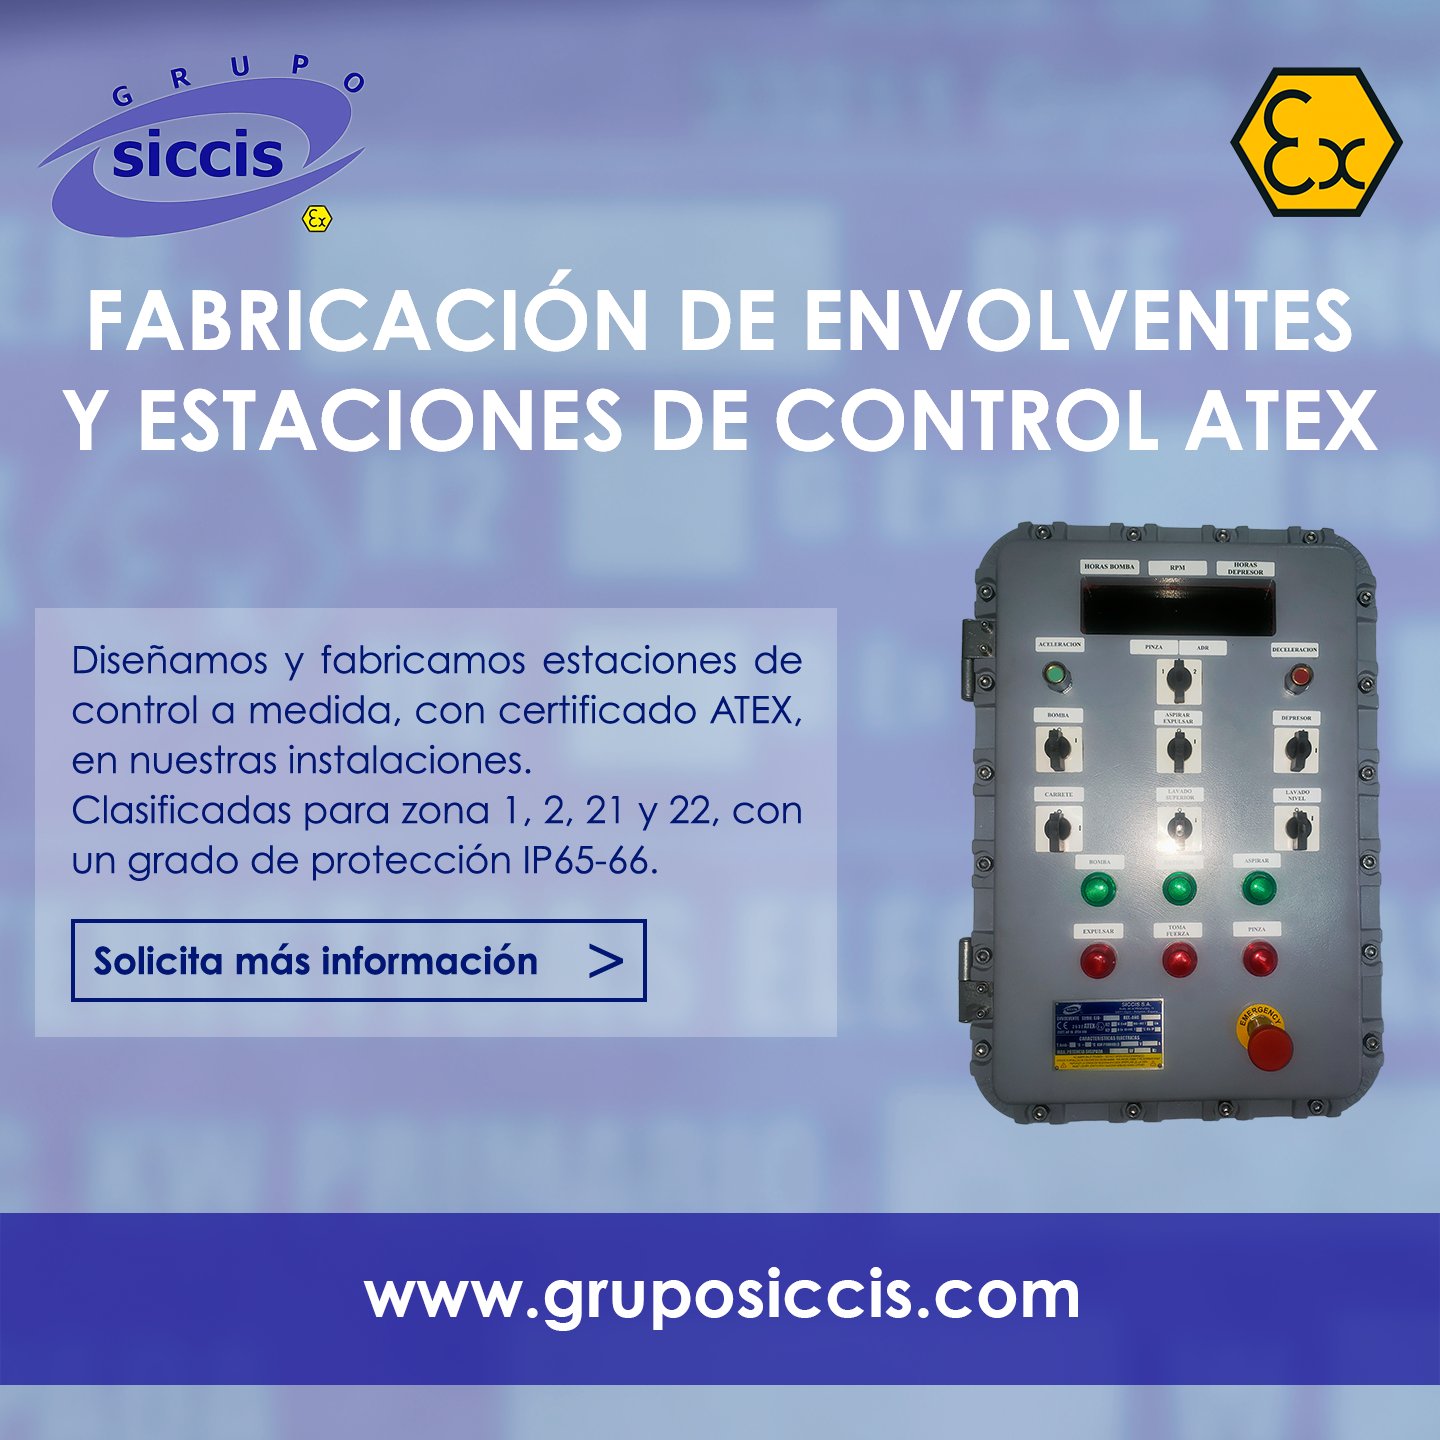 Siccis S.A. (@GrupoSiccis) / X